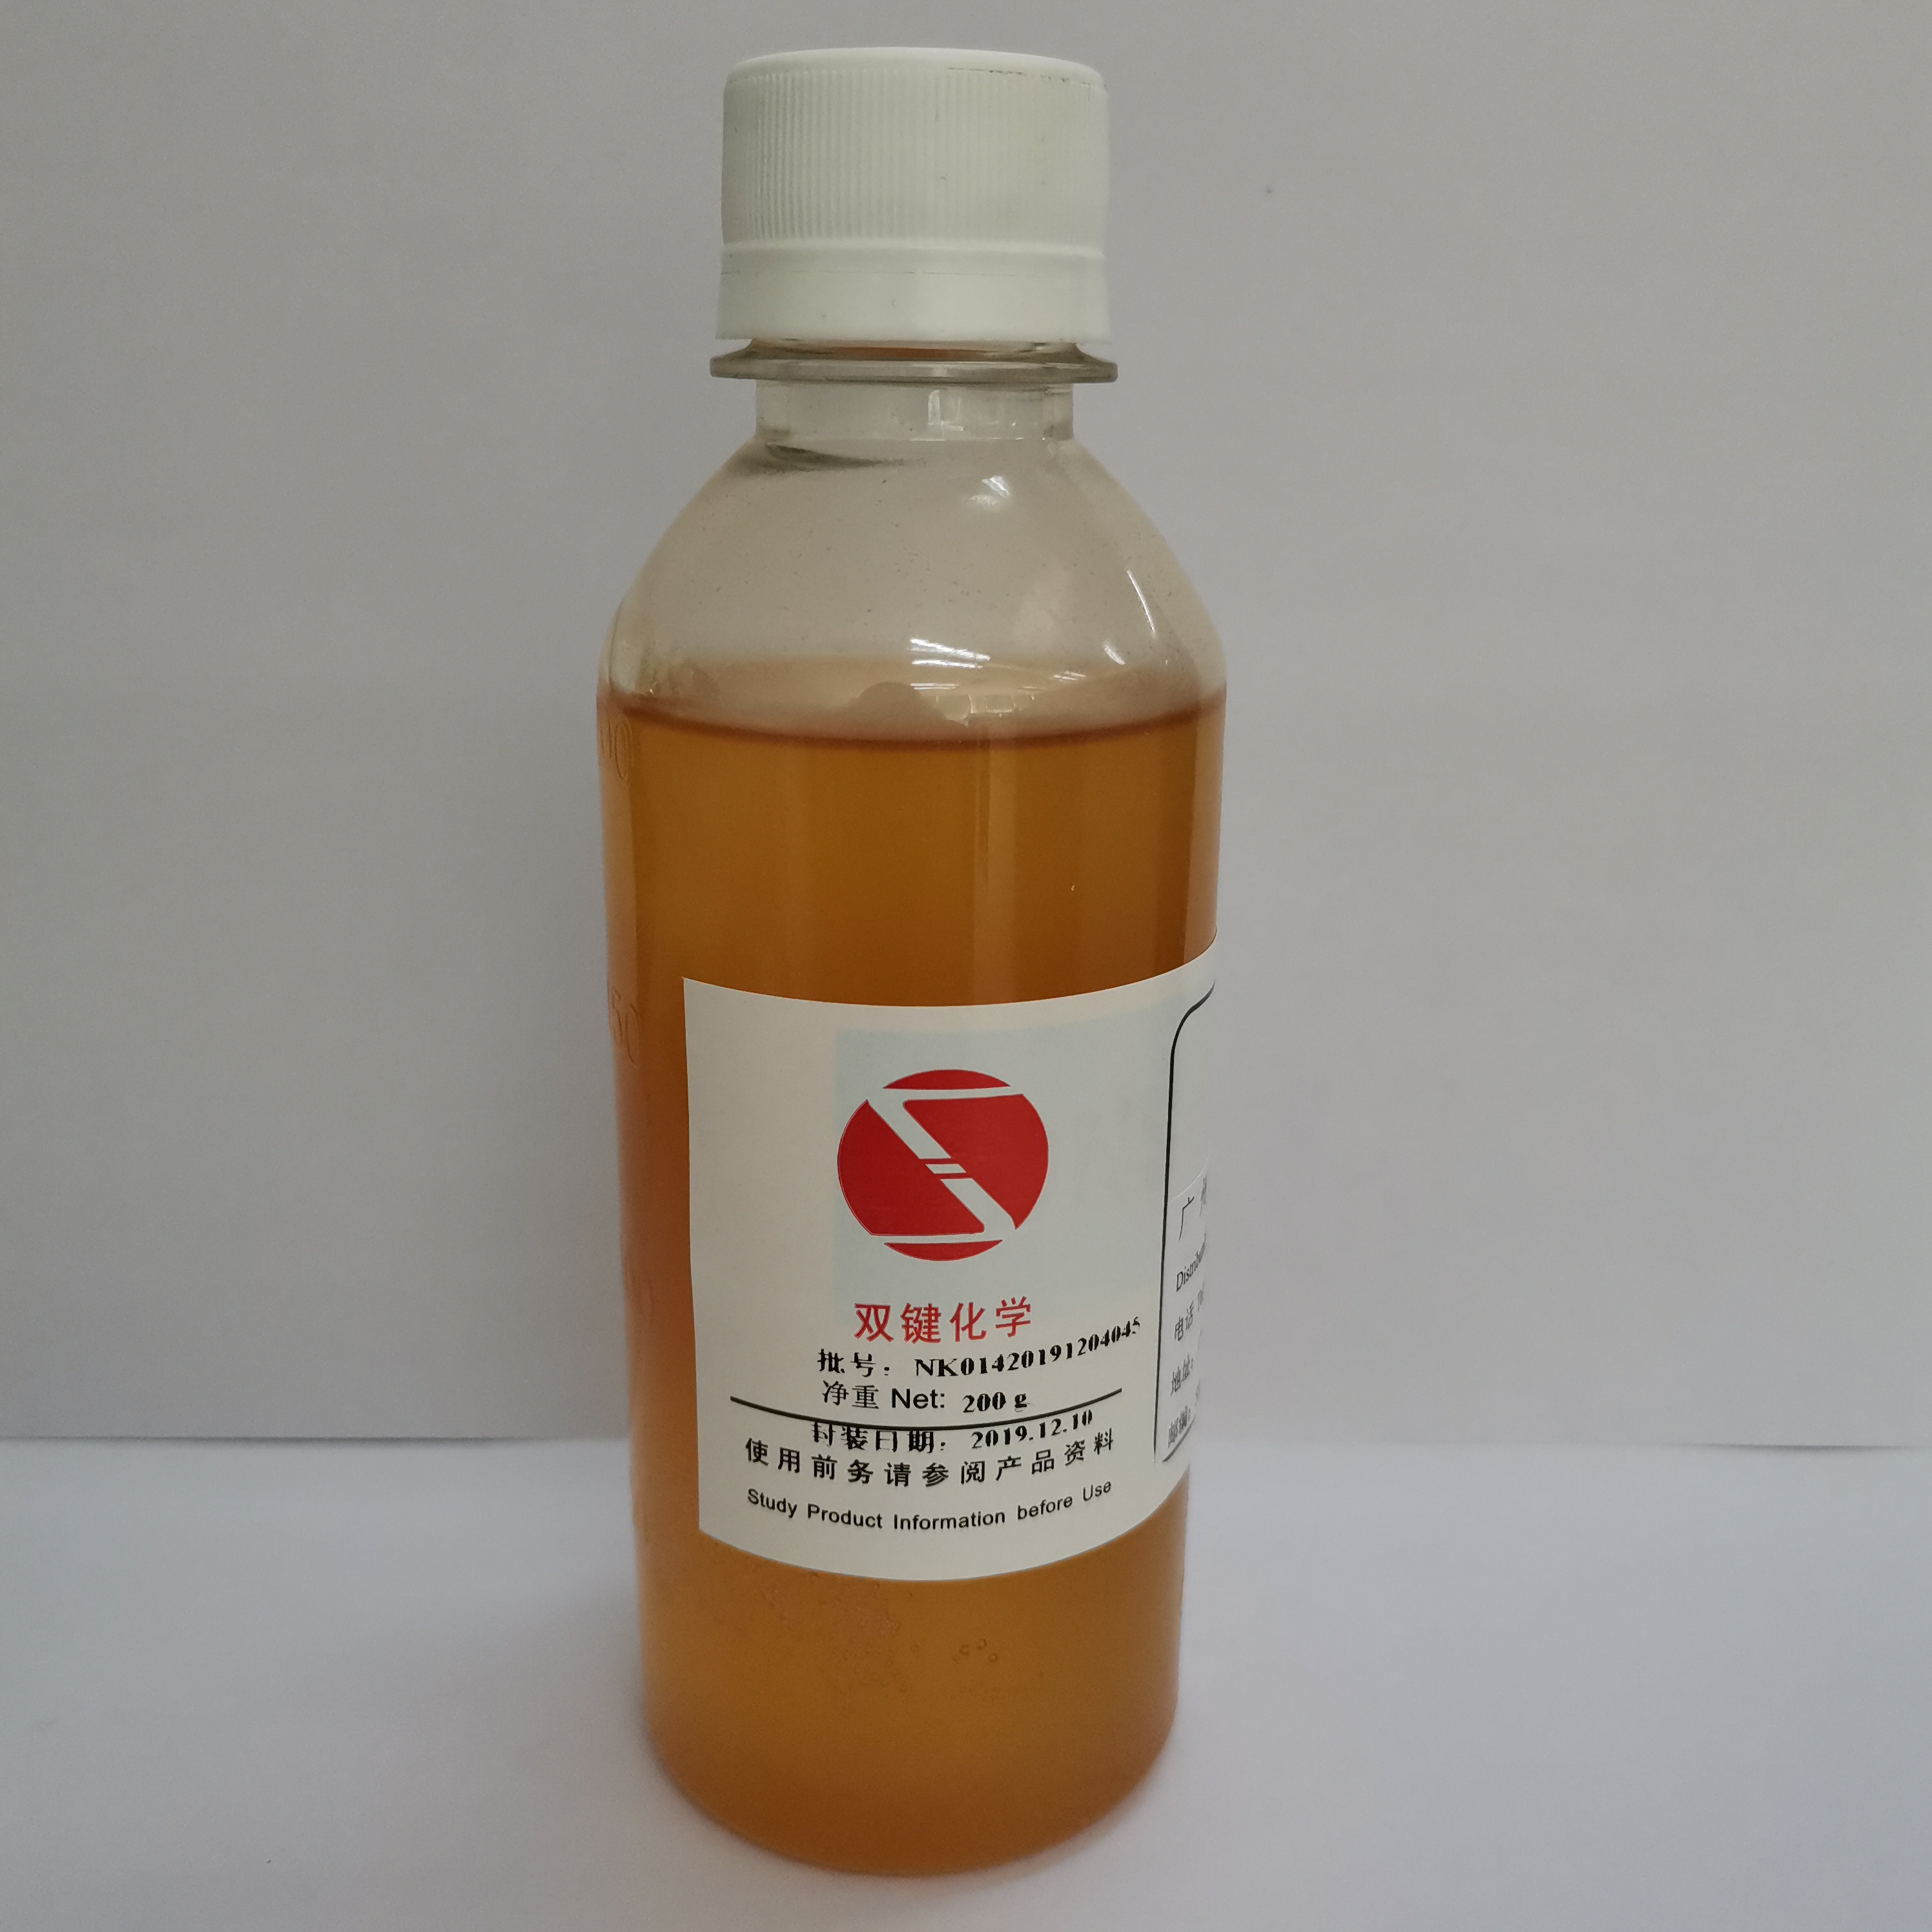 腰果酚聚氧乙烯 (5) 醚硫酸铵